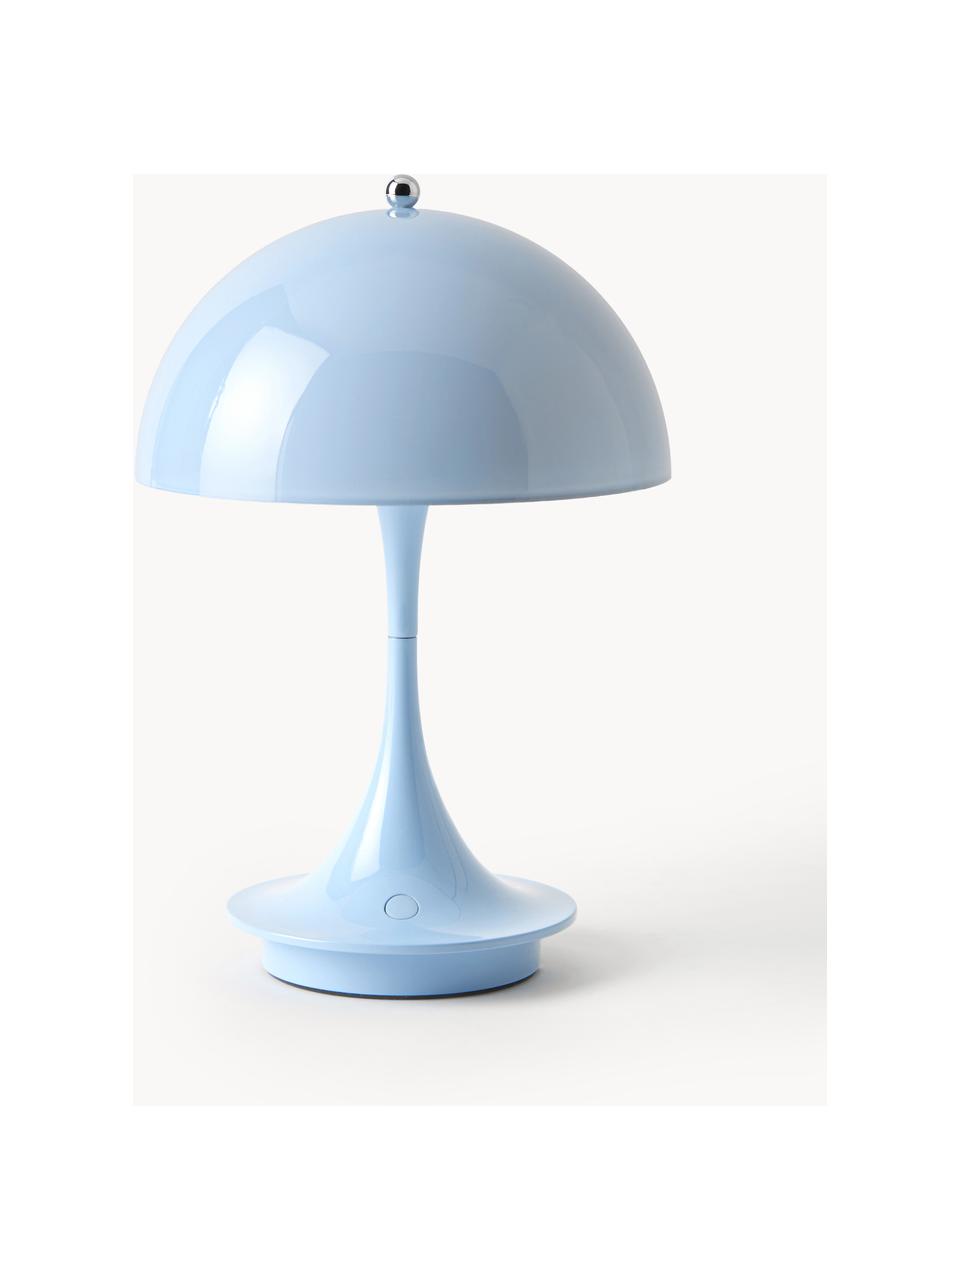 Mobilna lampa stołowa LED z funkcją przyciemniania Panthella, W 24 cm, Stelaż: aluminium powlekane, Jasnoniebieskie szkło akrylowe, Ø 16 x 24 cm